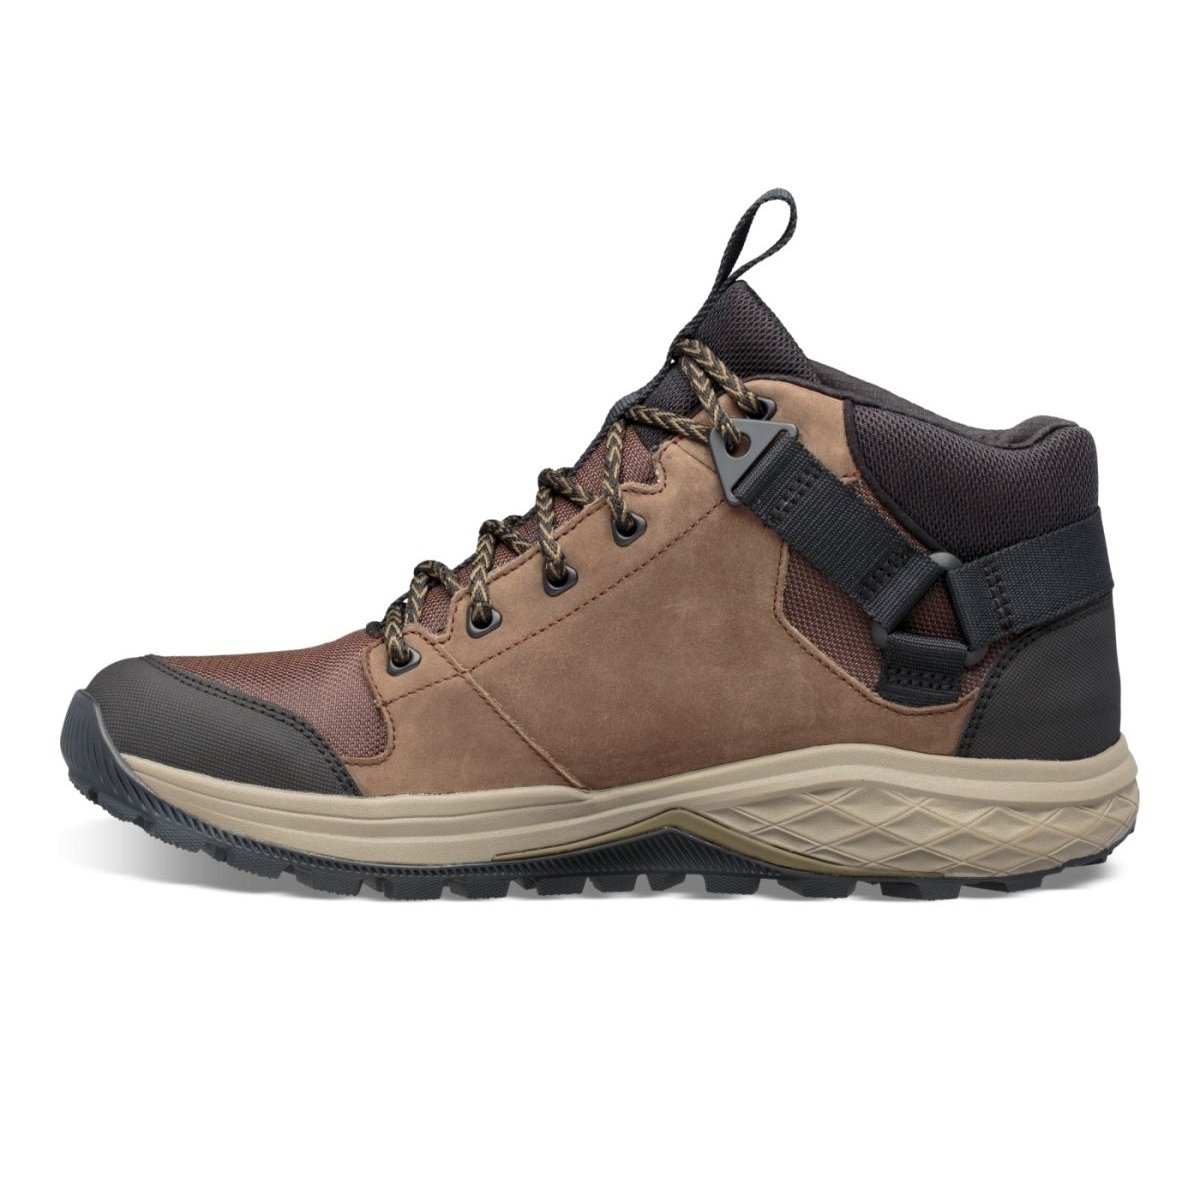 Teva Men's Grandview Mid Gore-Tex Hiking Shoe Chocolate Chip - 1106804-CCHP CHOCOLATE CHIP - CHOCOLATE CHIP, 9